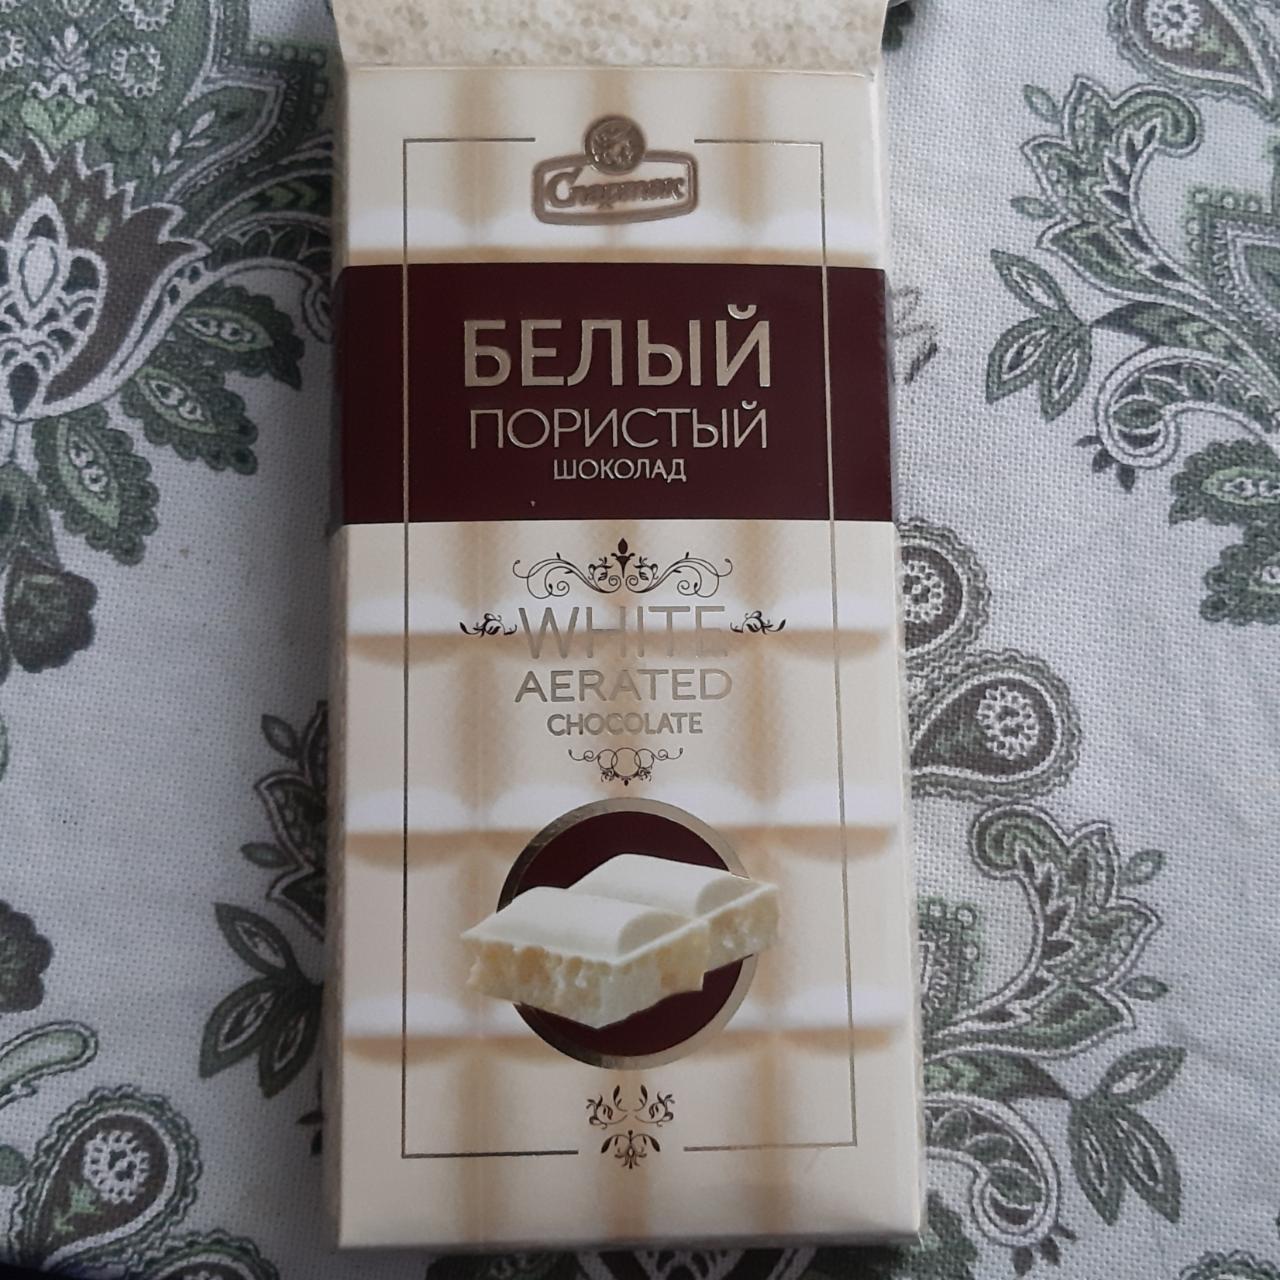 Фото - Белый пористый шоколад White Chocolate Air Spartak Спартак